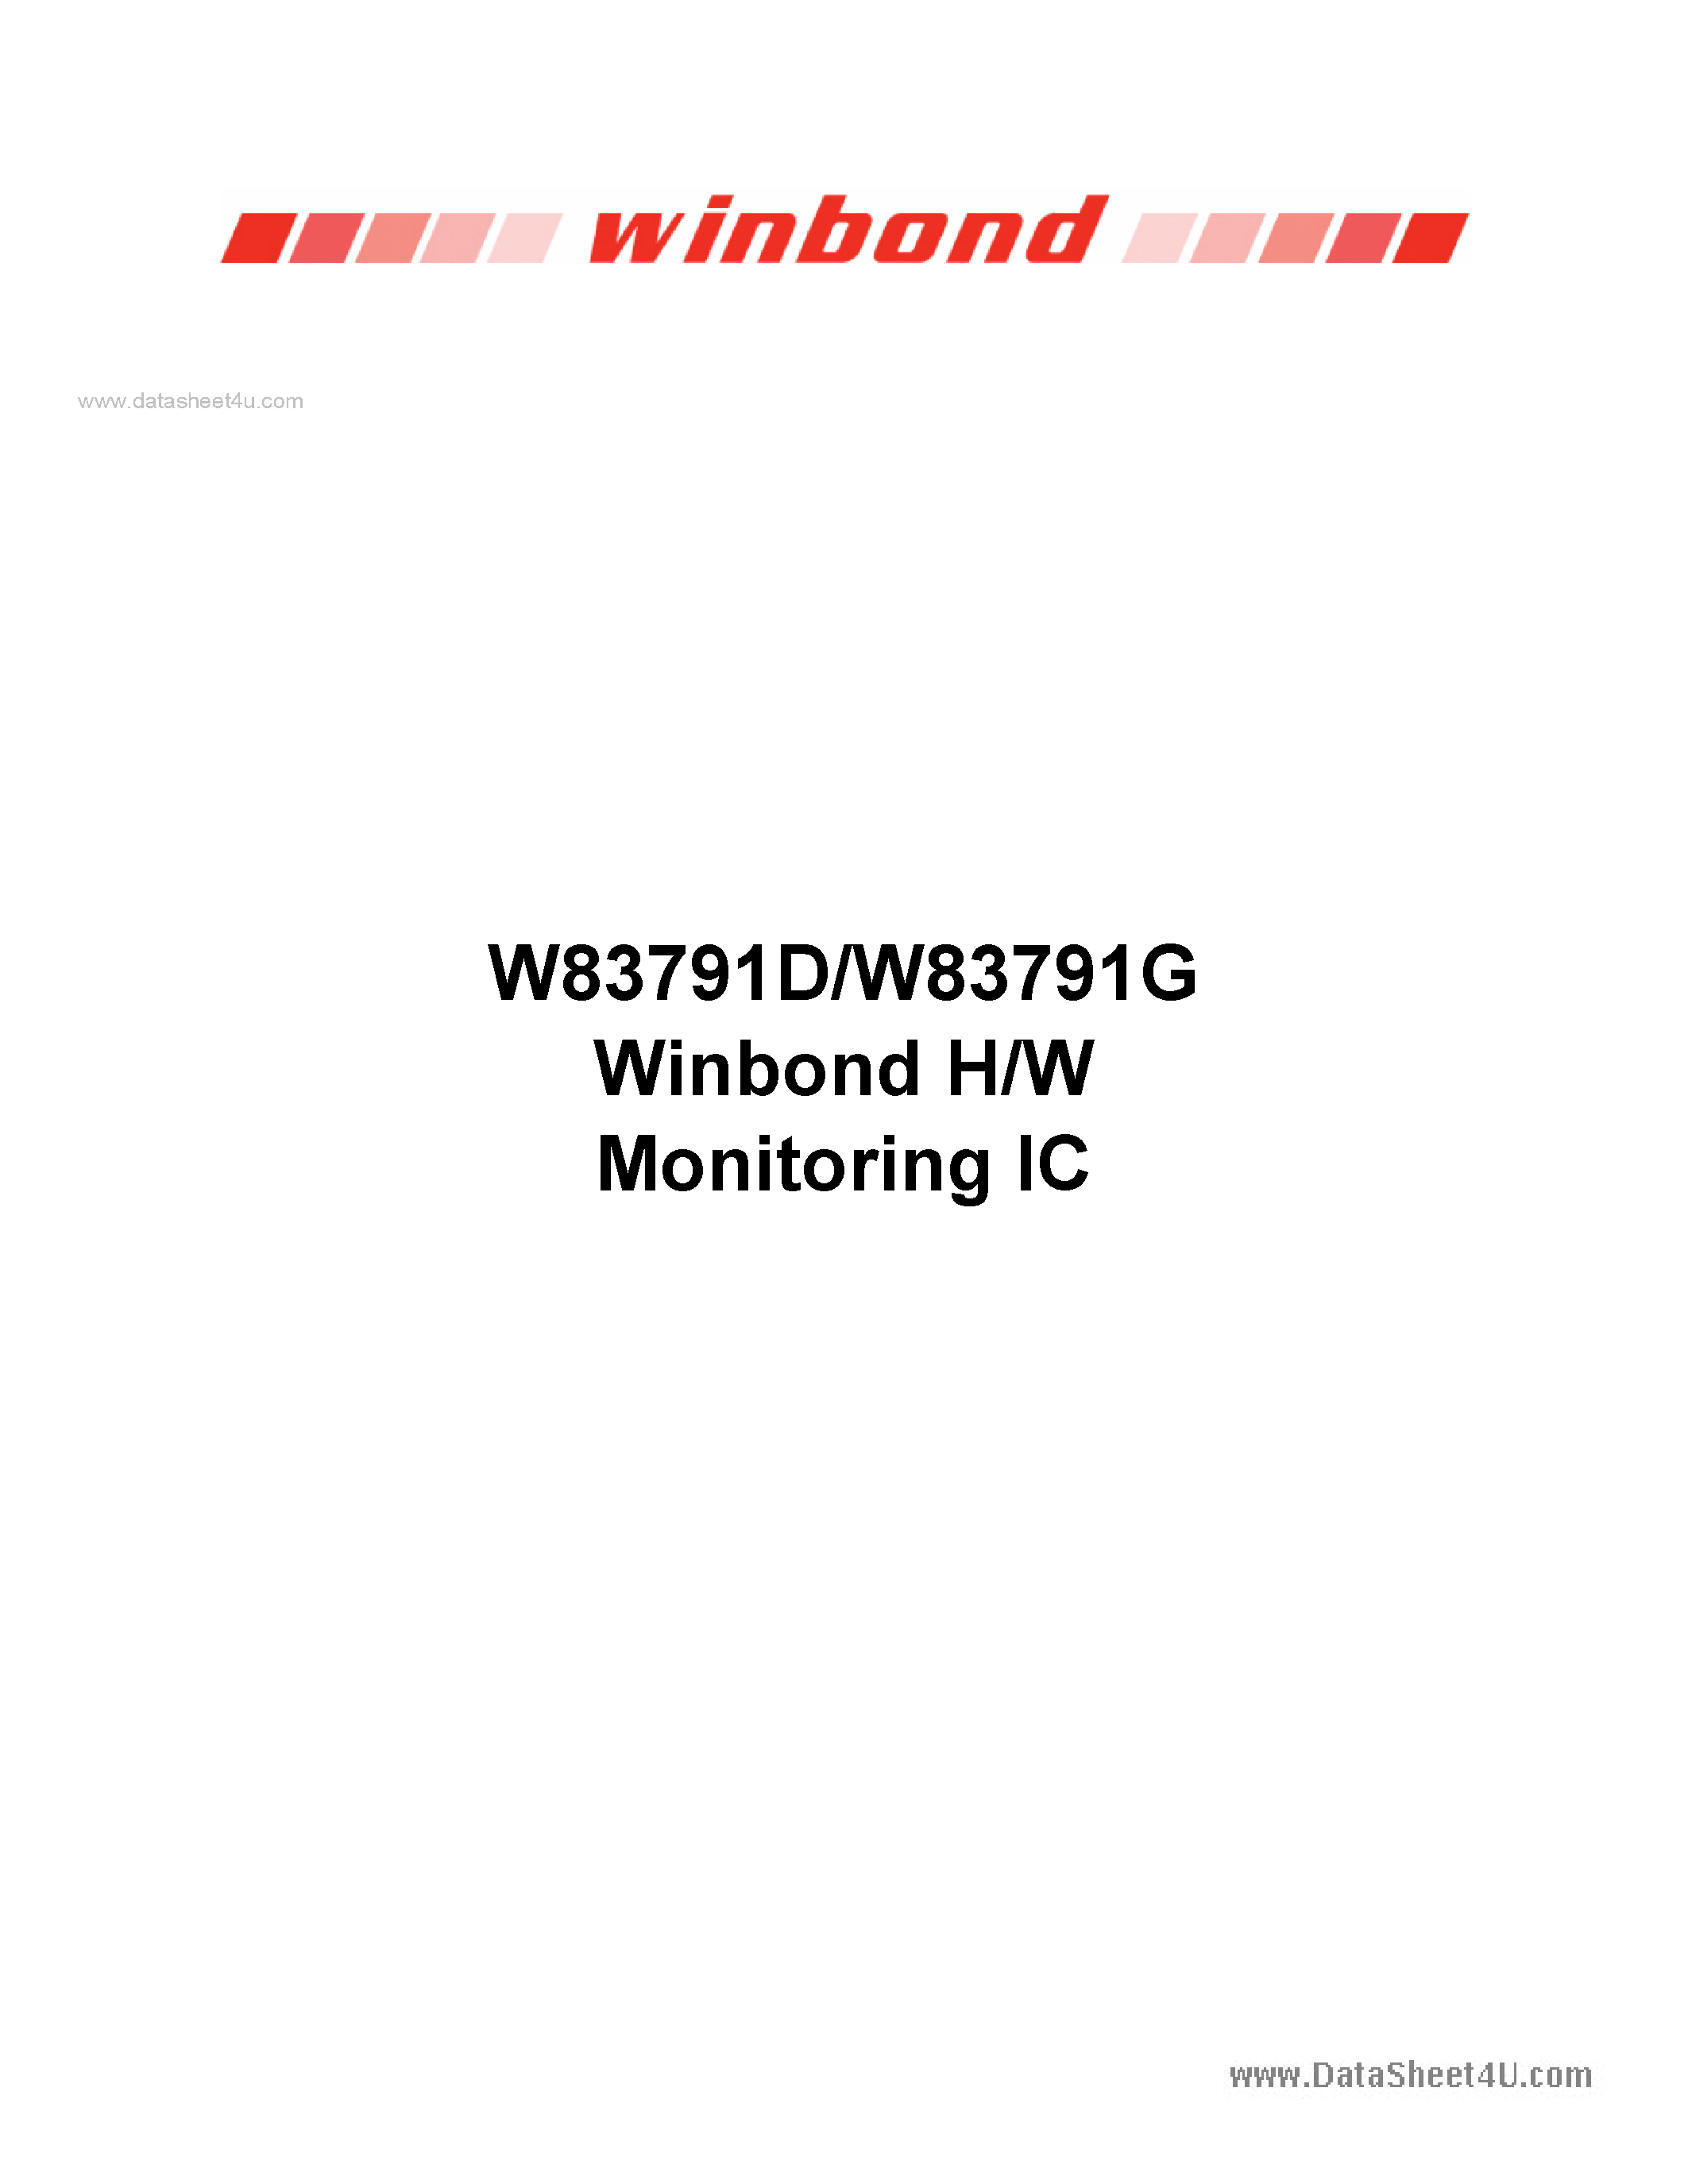 Даташит W83791D - H/W Monitoring IC страница 1